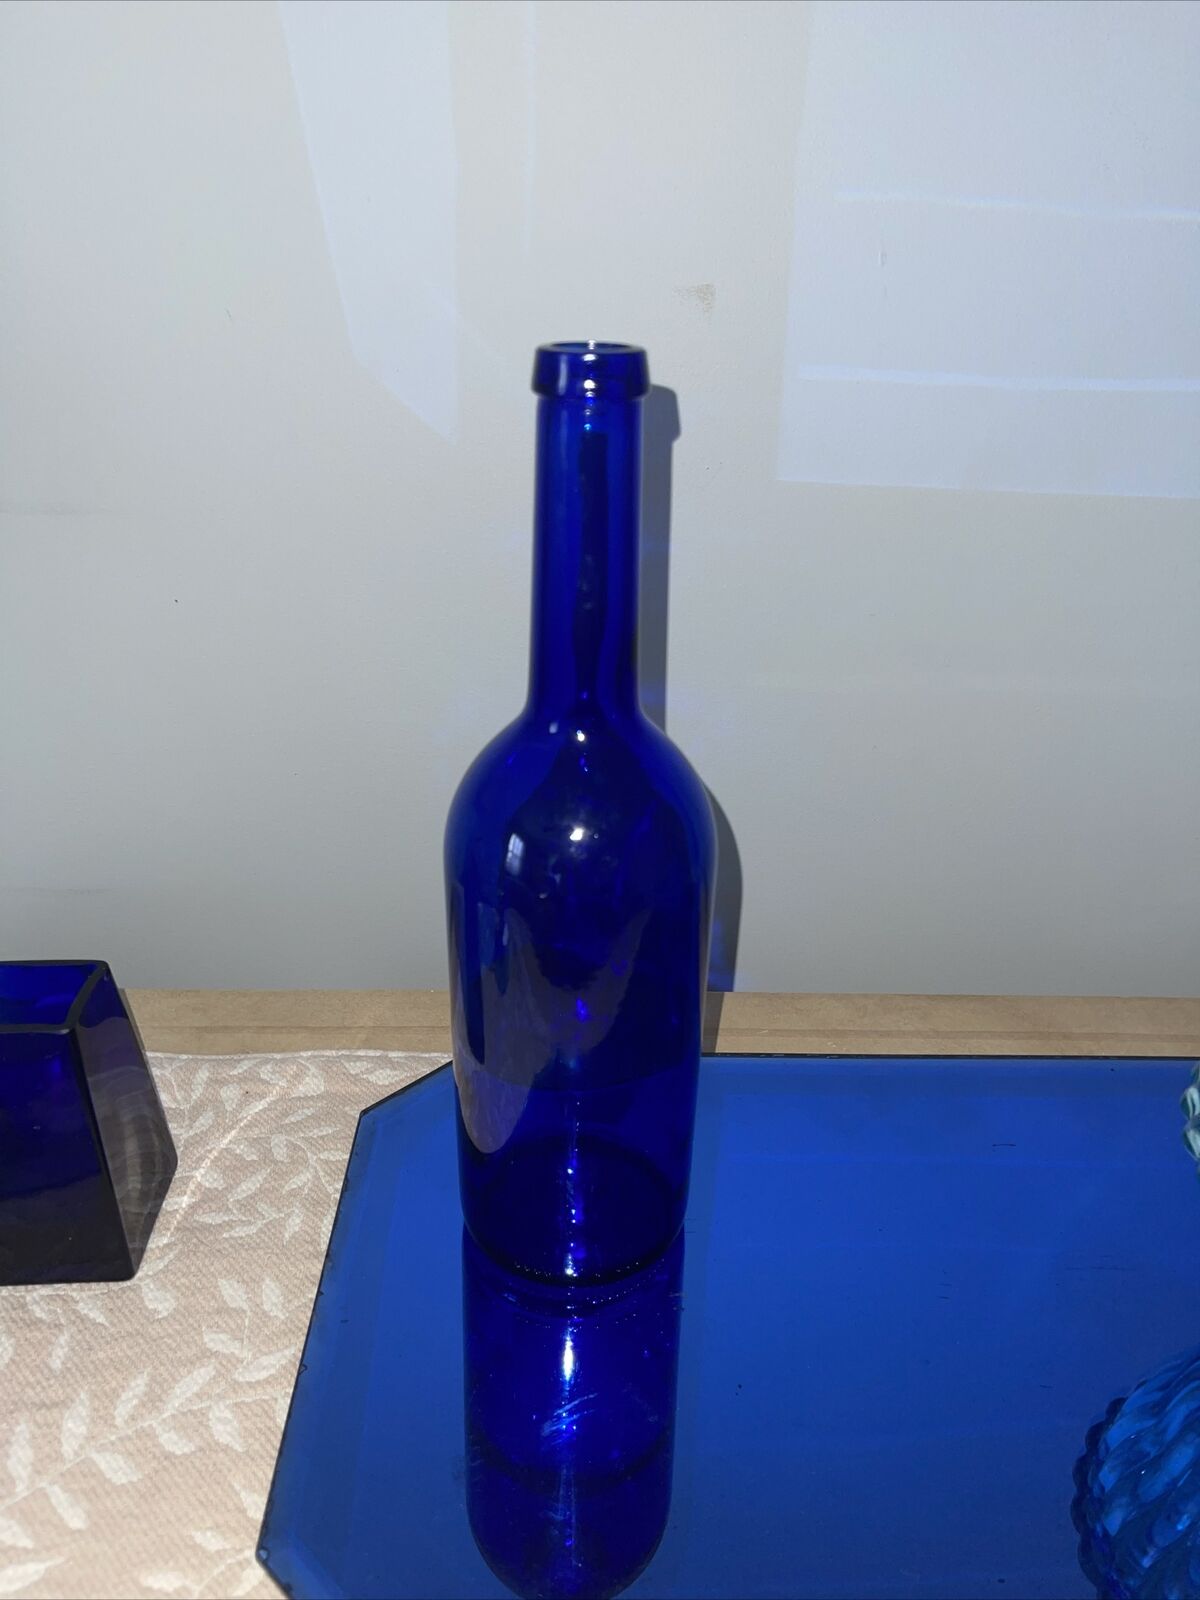 VTG John Harvey 750ml Colbalt Blue Bottle Stamped F 07 SPAIN No 115189 UK RARE